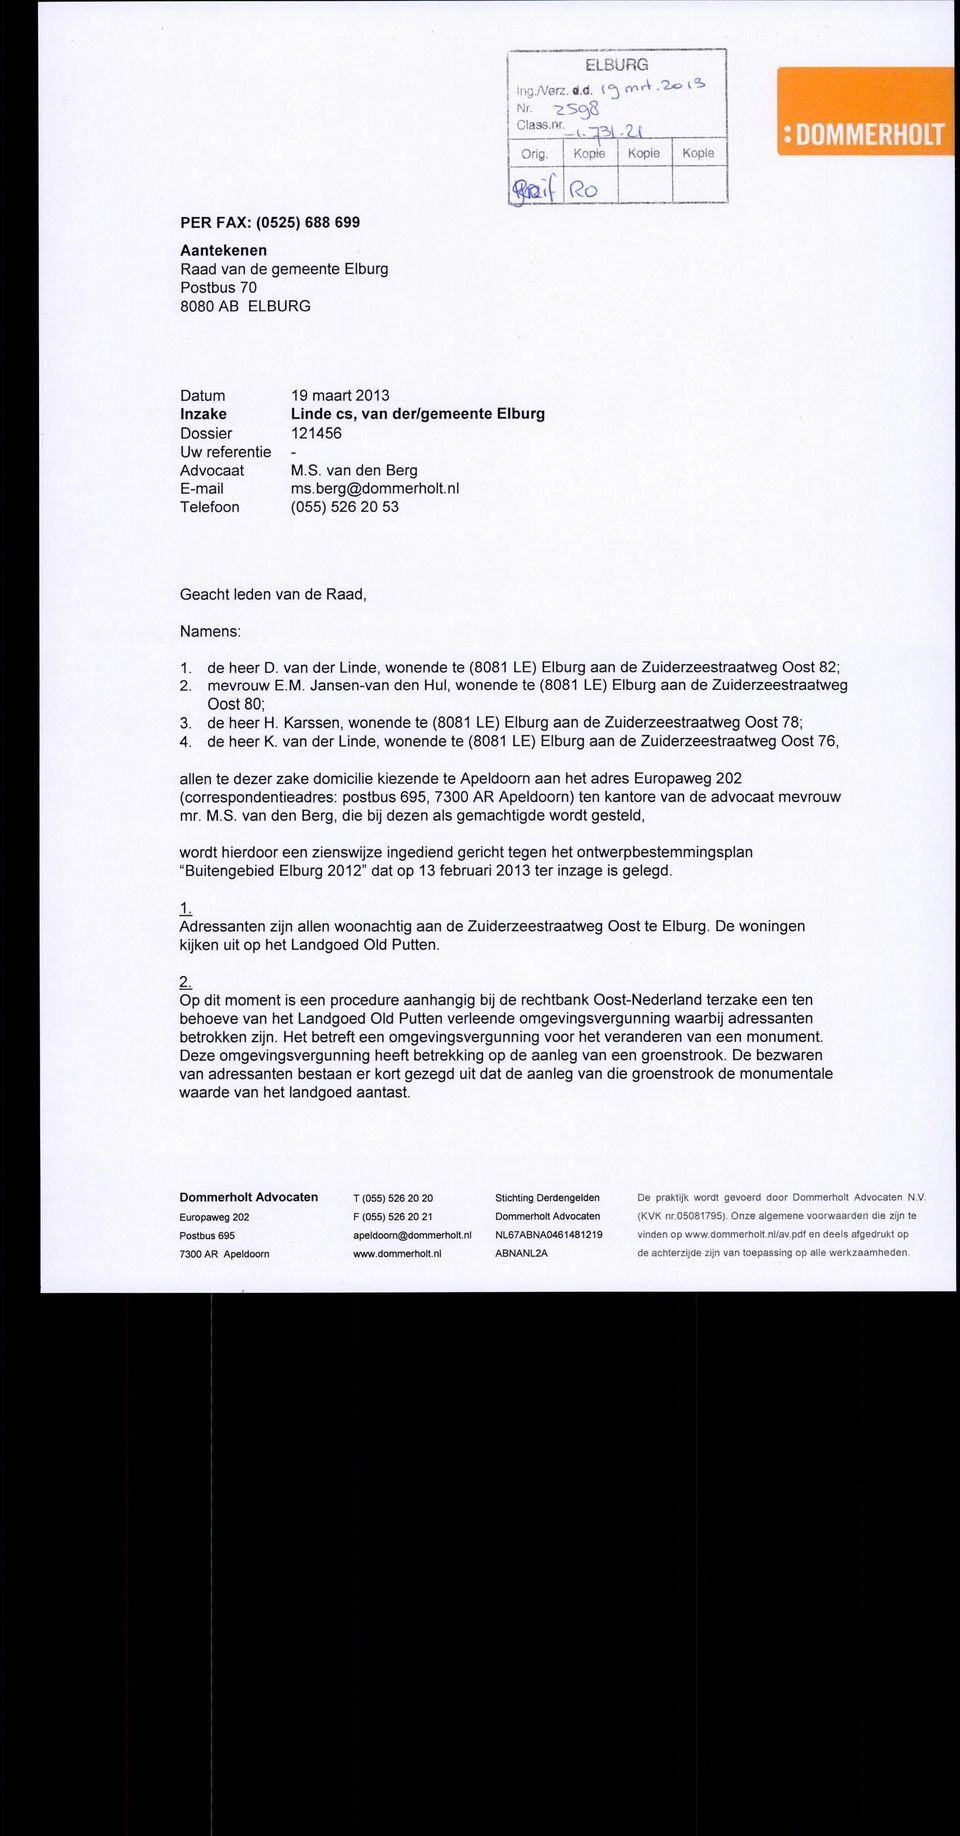 referentie - Advocaat M.S. van den Berg E-mail ms.berg@dommerholt.nl Telefoon (055) 526 20 53 Geacht leden van de Raad, Namens: 1. de heer D.